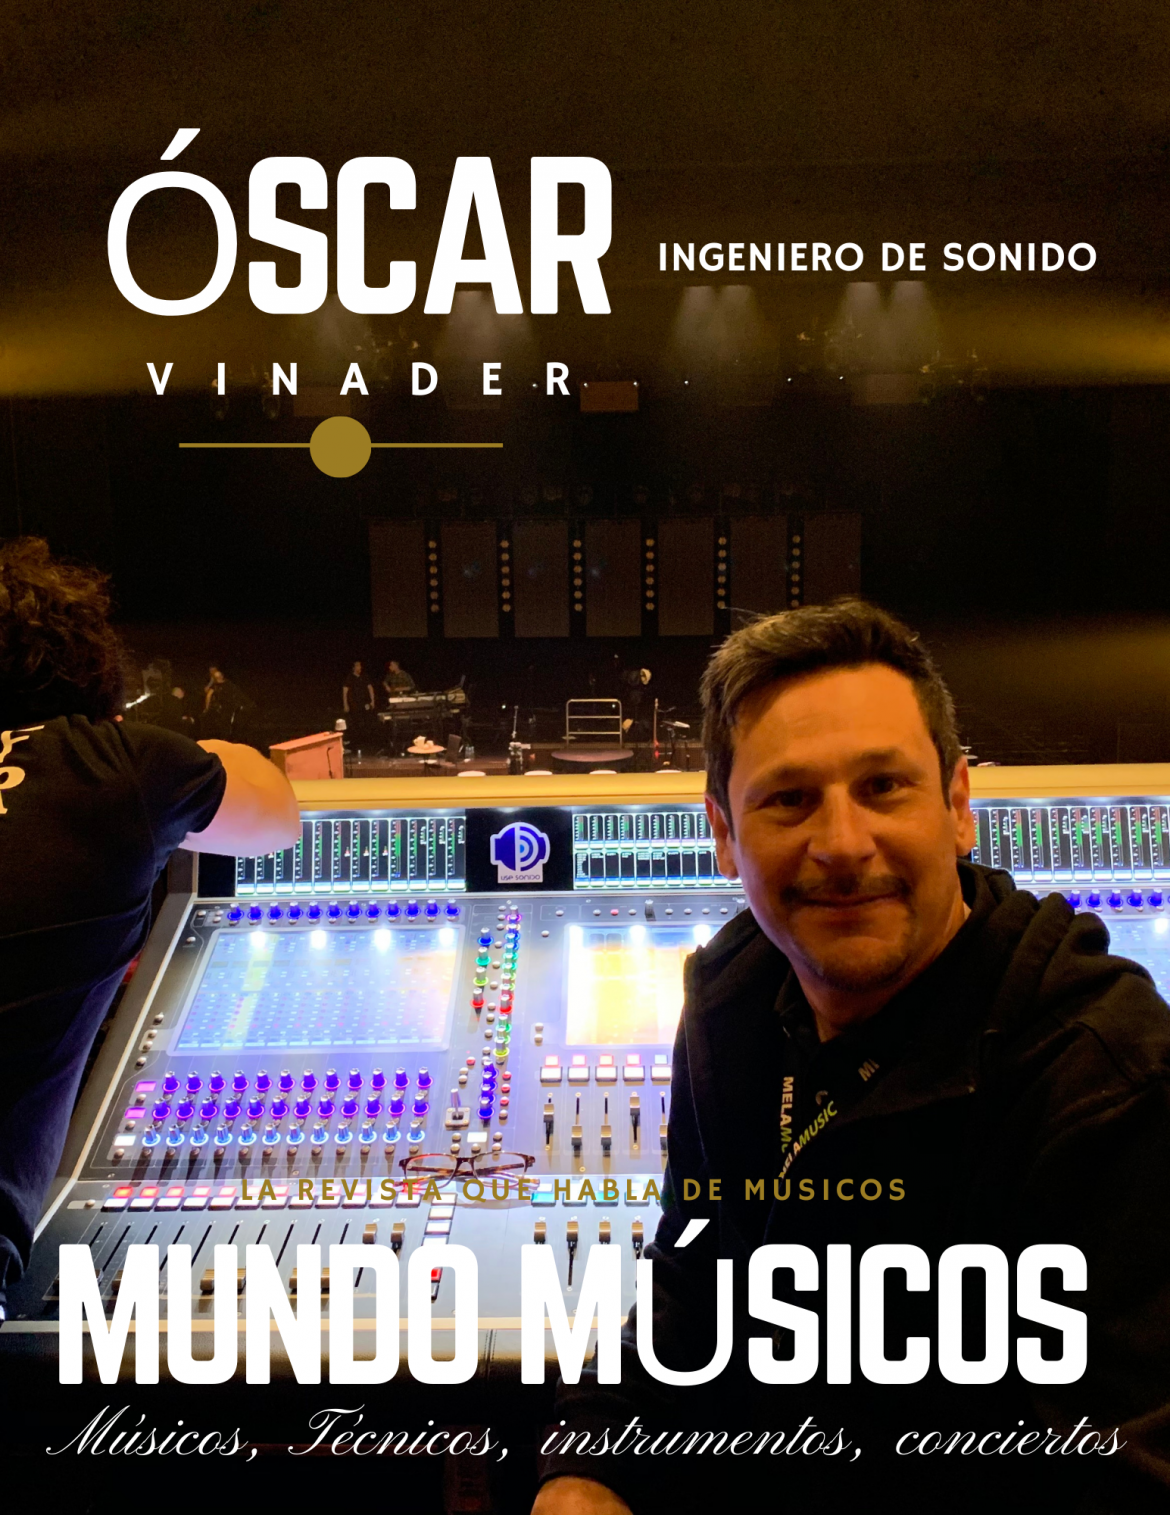 Óscar Vinader, Ingeniero de Sonido